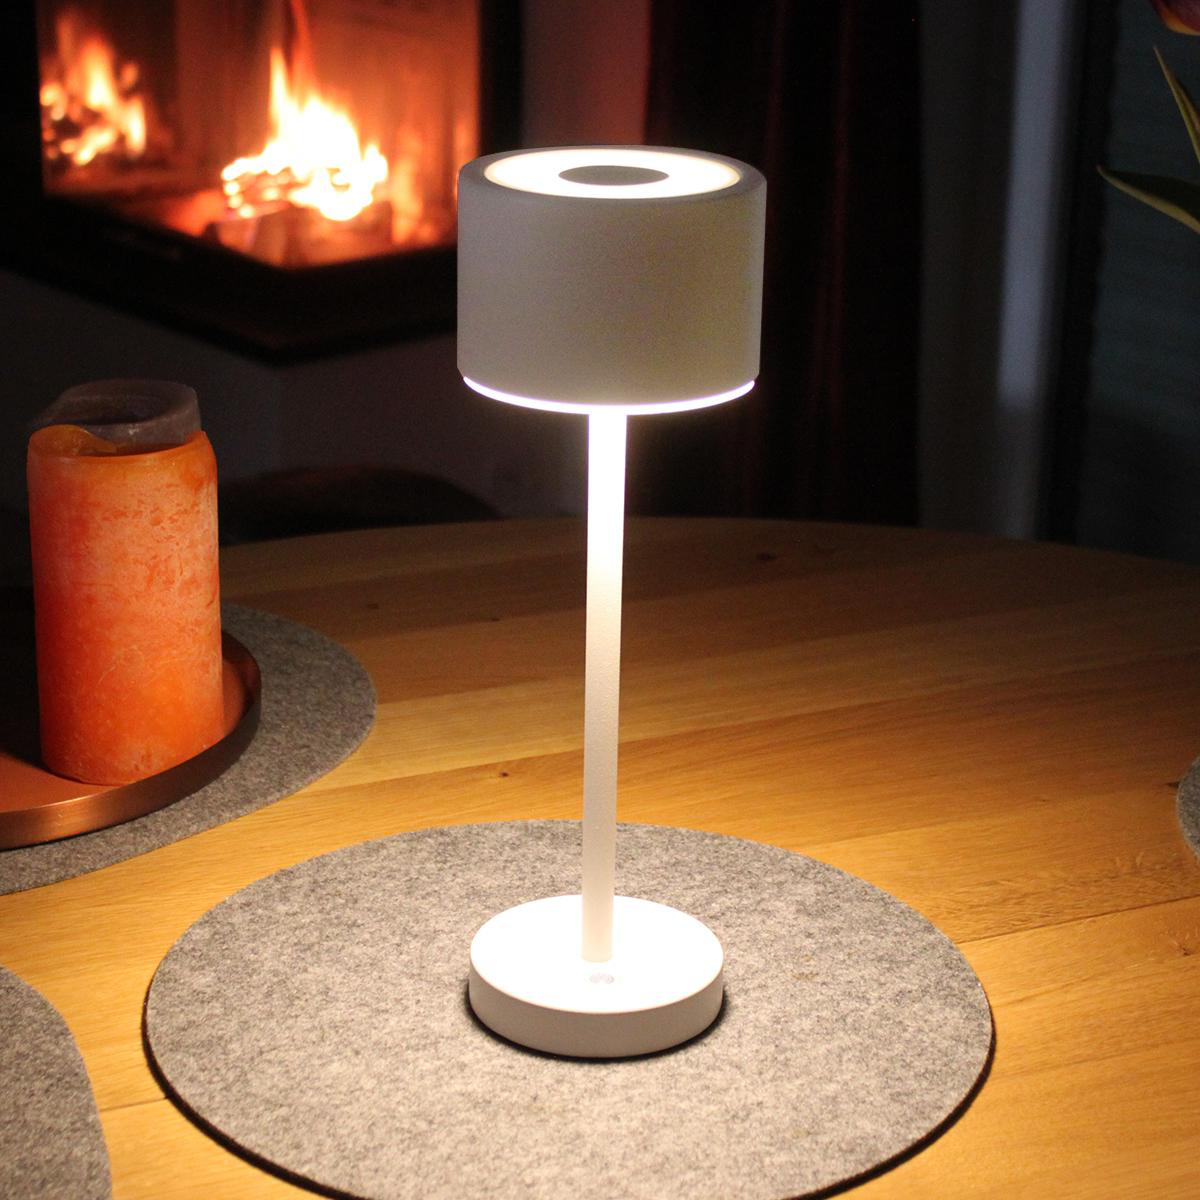 Design Warmweiß SEECODE Akku-Tischleuchte LED